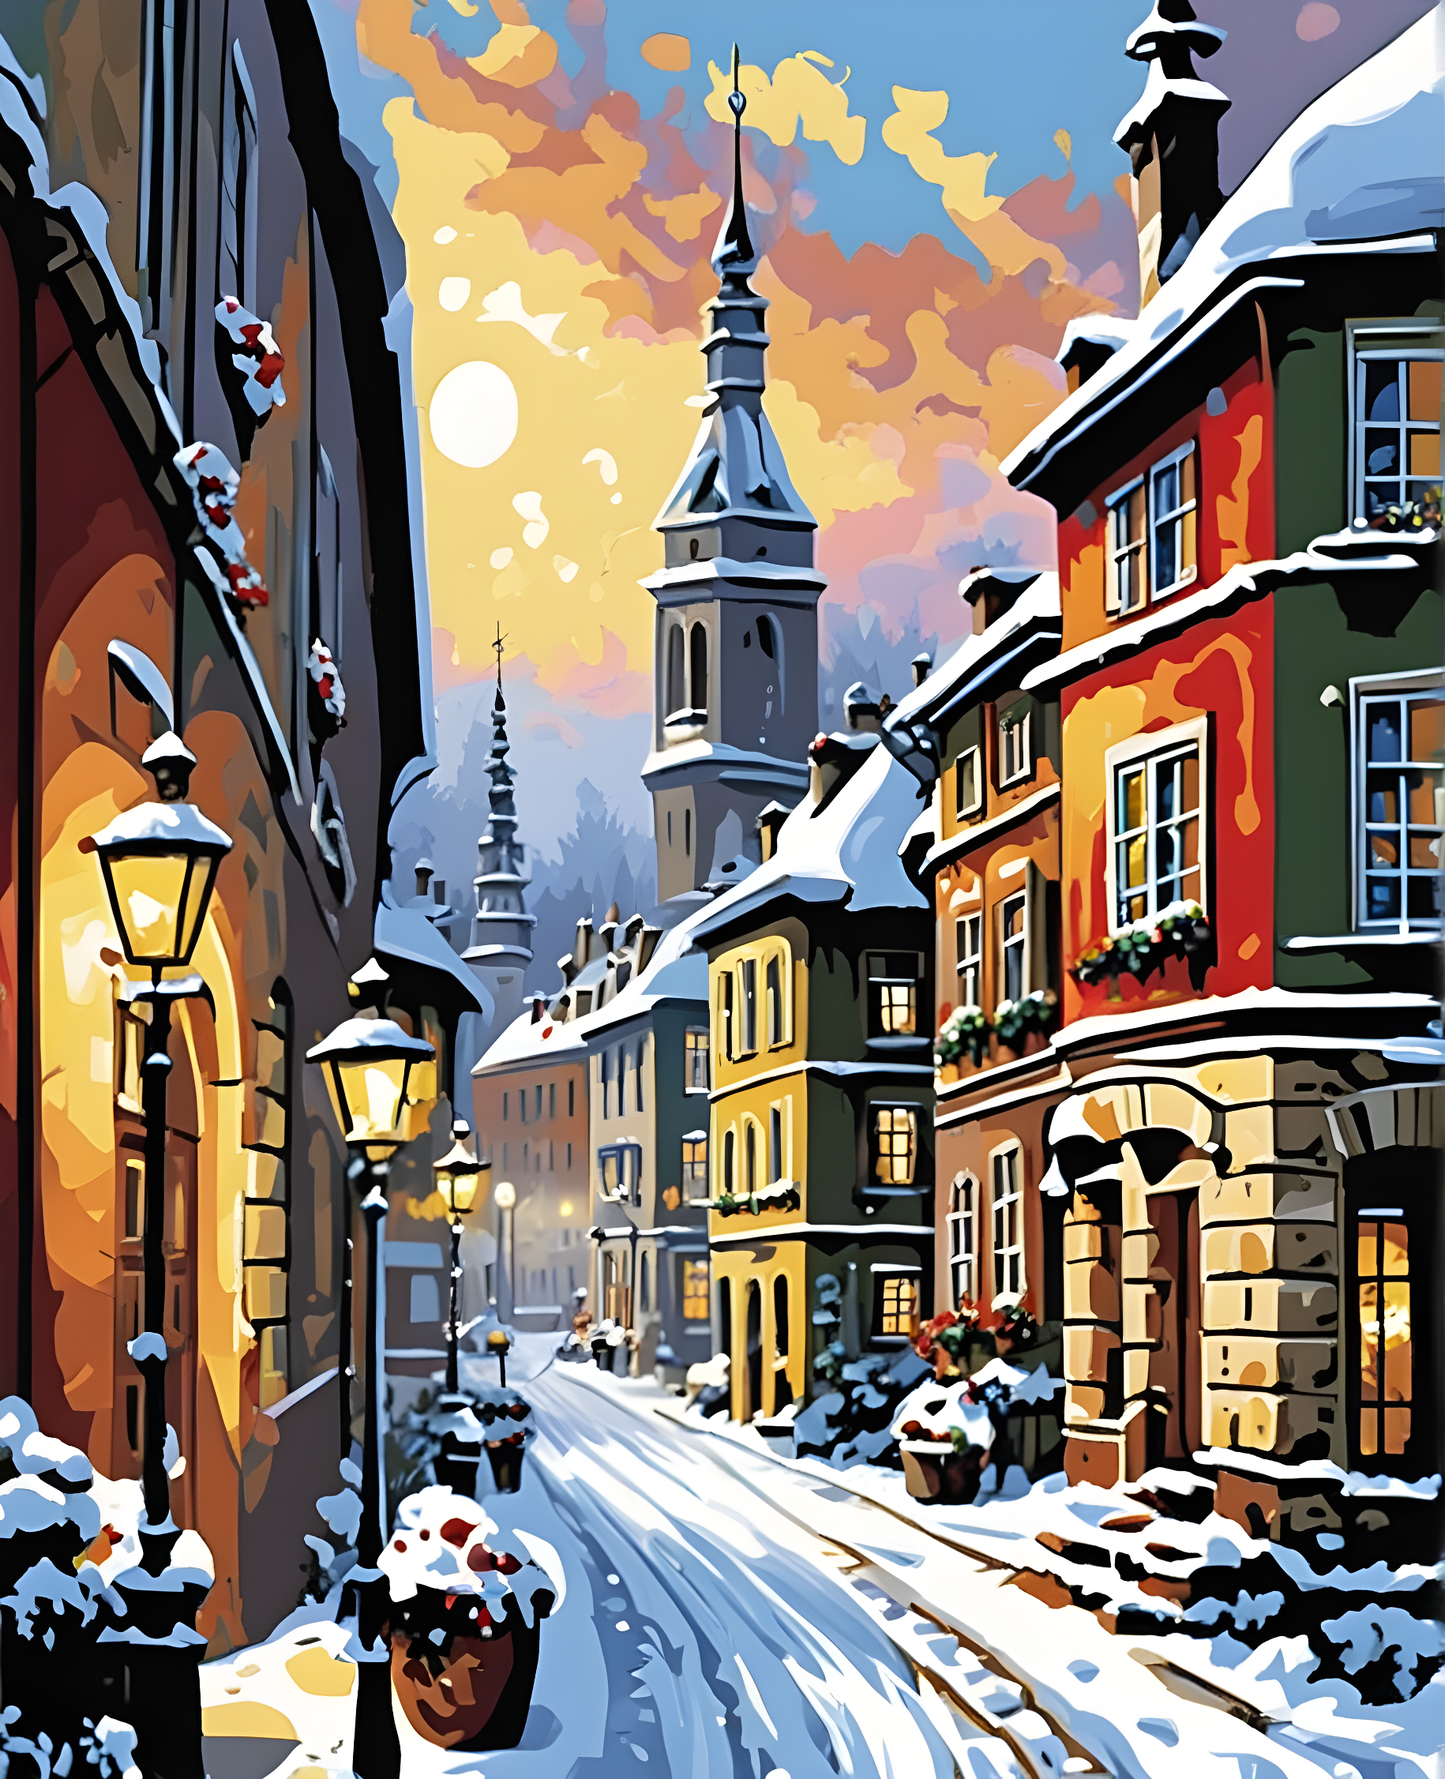 Snowy European Street - Van-Go Paint-By-Number Kit